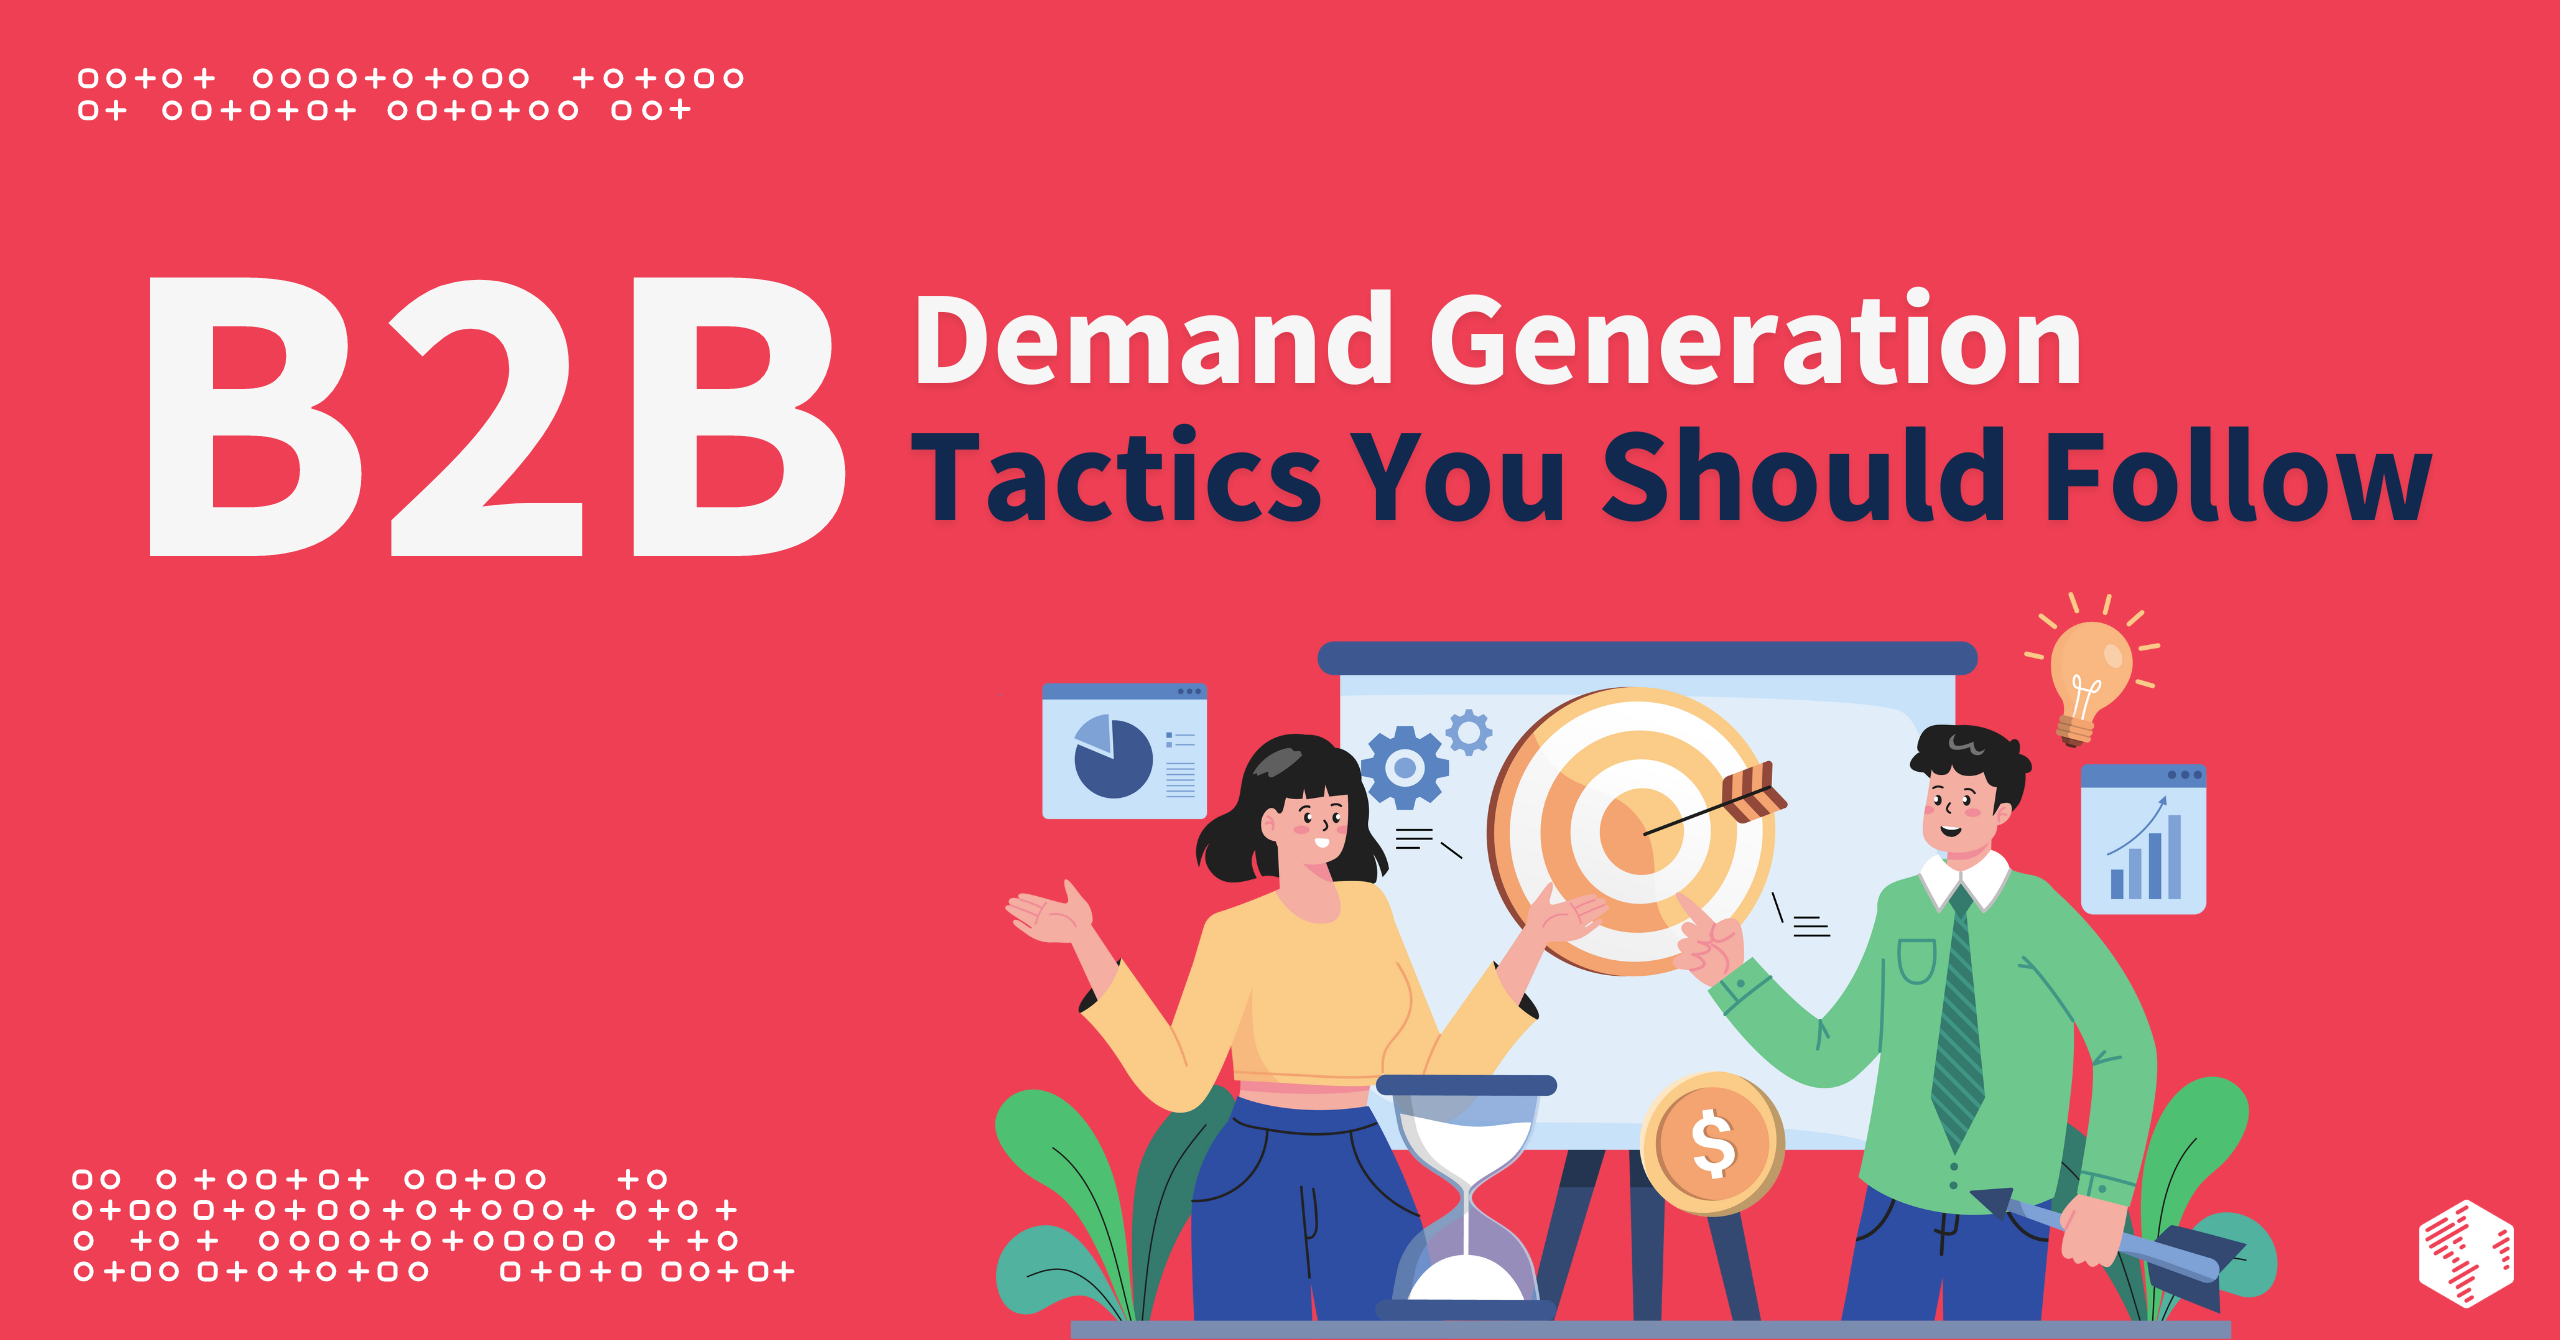 B2B Demand Generation Tactics You Should Follow